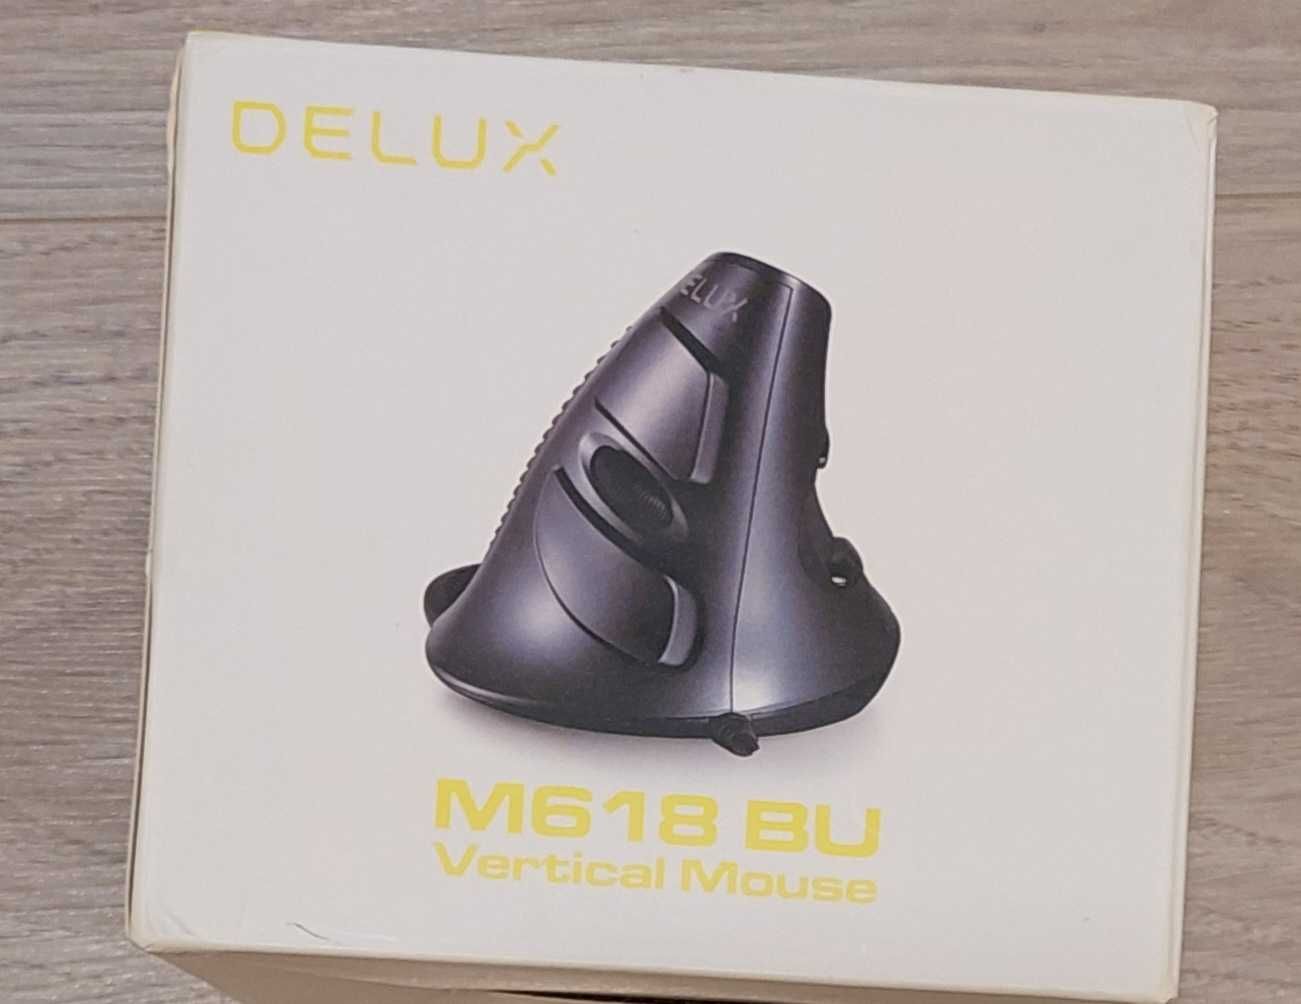 Mouse vertical Delux M618 BU-TRANSPORT GRATUIT